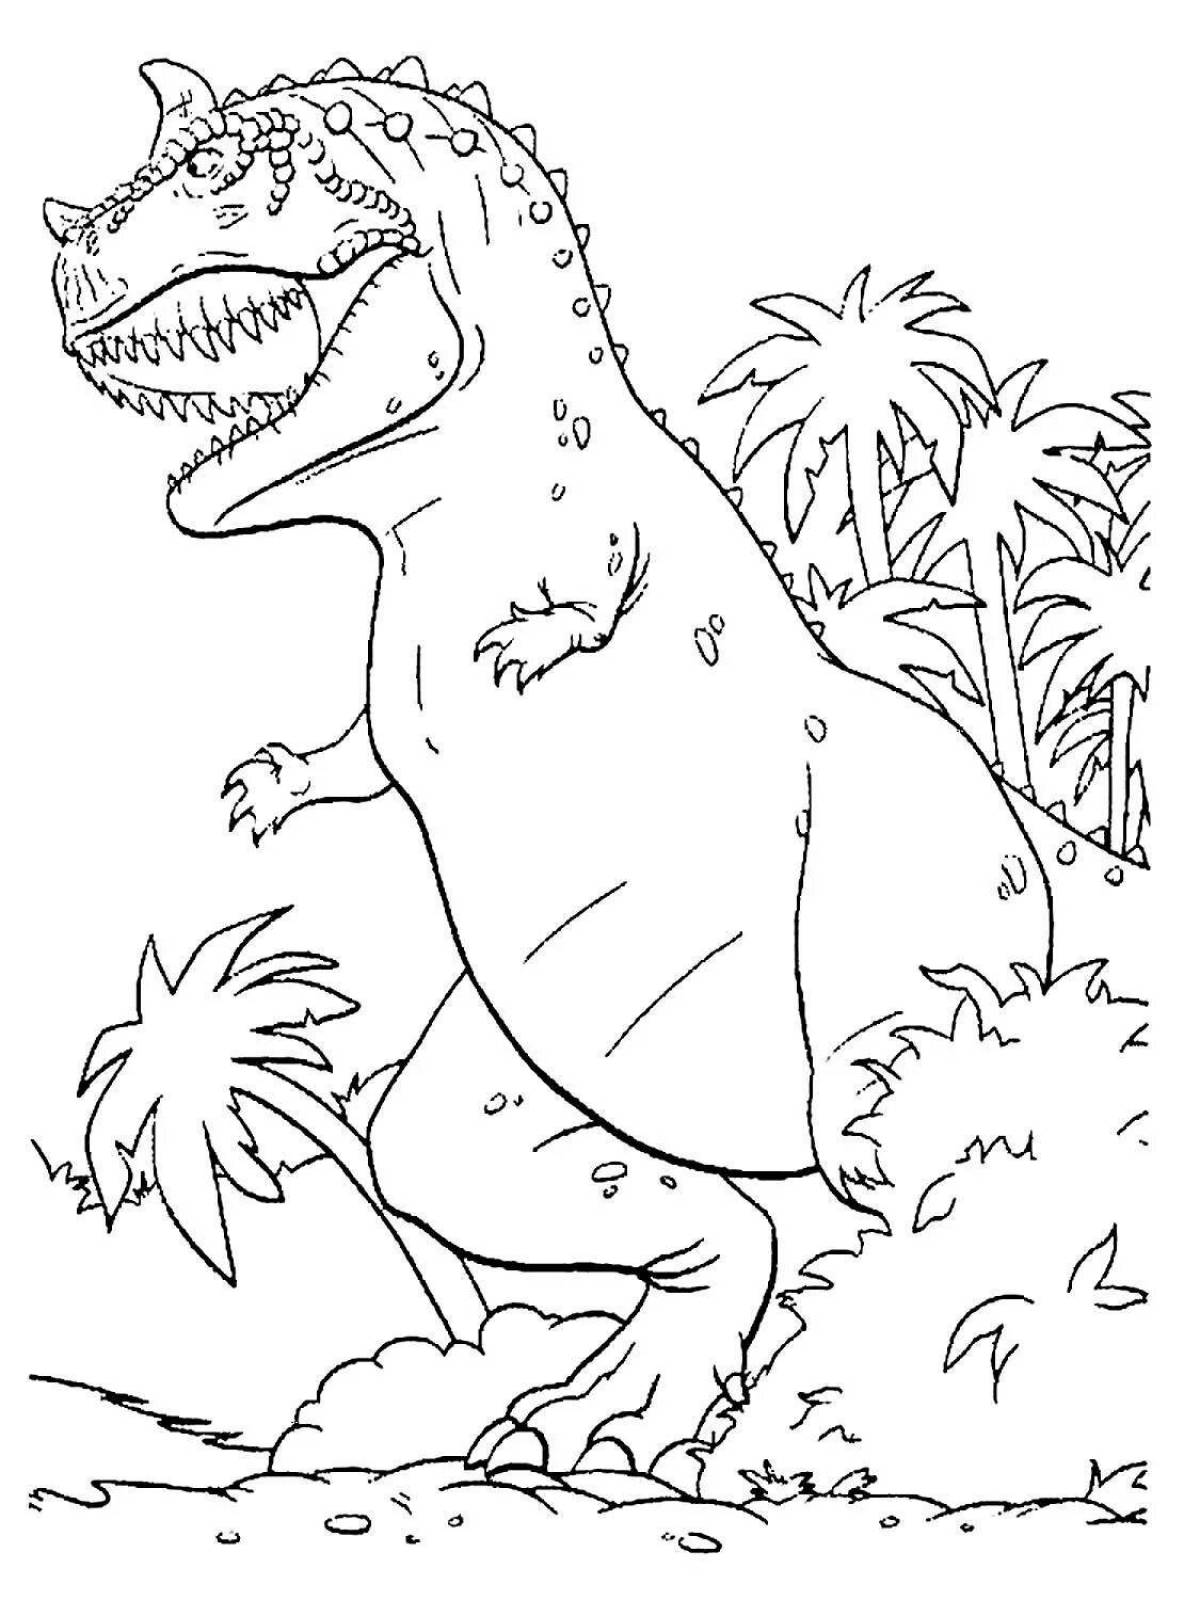 Раскраска динозавр формат а4. Мир Юрского периода рекс раскраска. Раскраска Тираннозавр рекс мир Юрского периода. Динозавры / раскраска. Рисунок динозавра для раскрашивания.